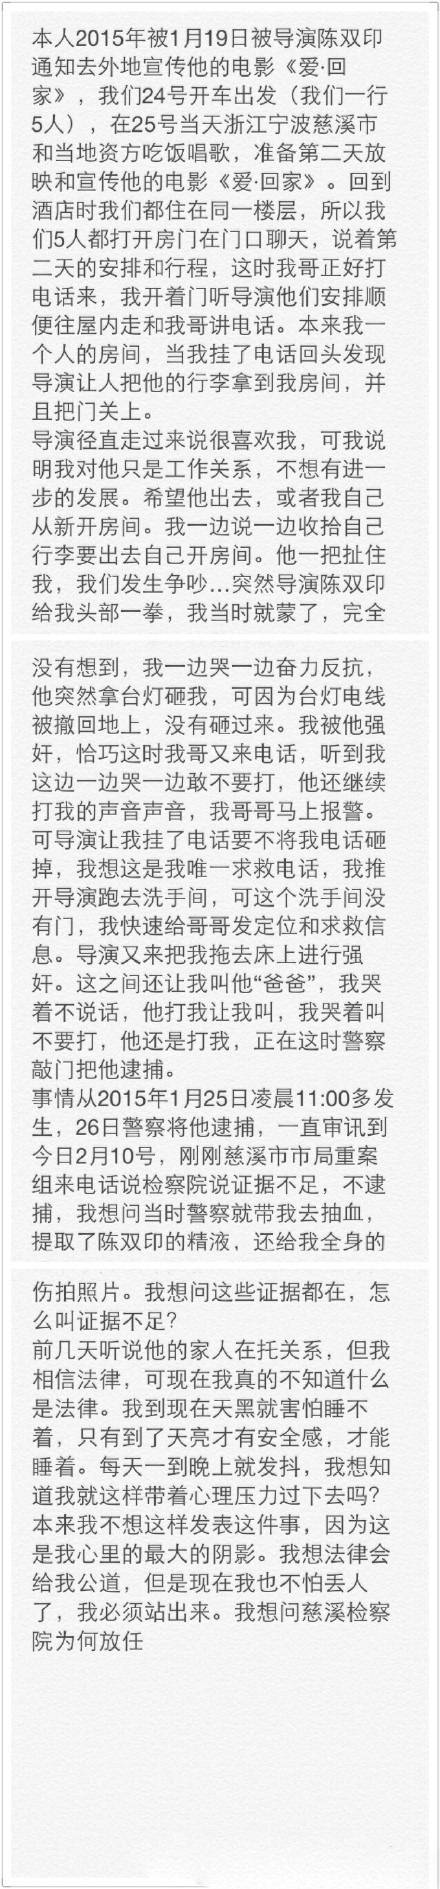 女星控诉被导演陈双印强奸 称＂证据不足＂已释放